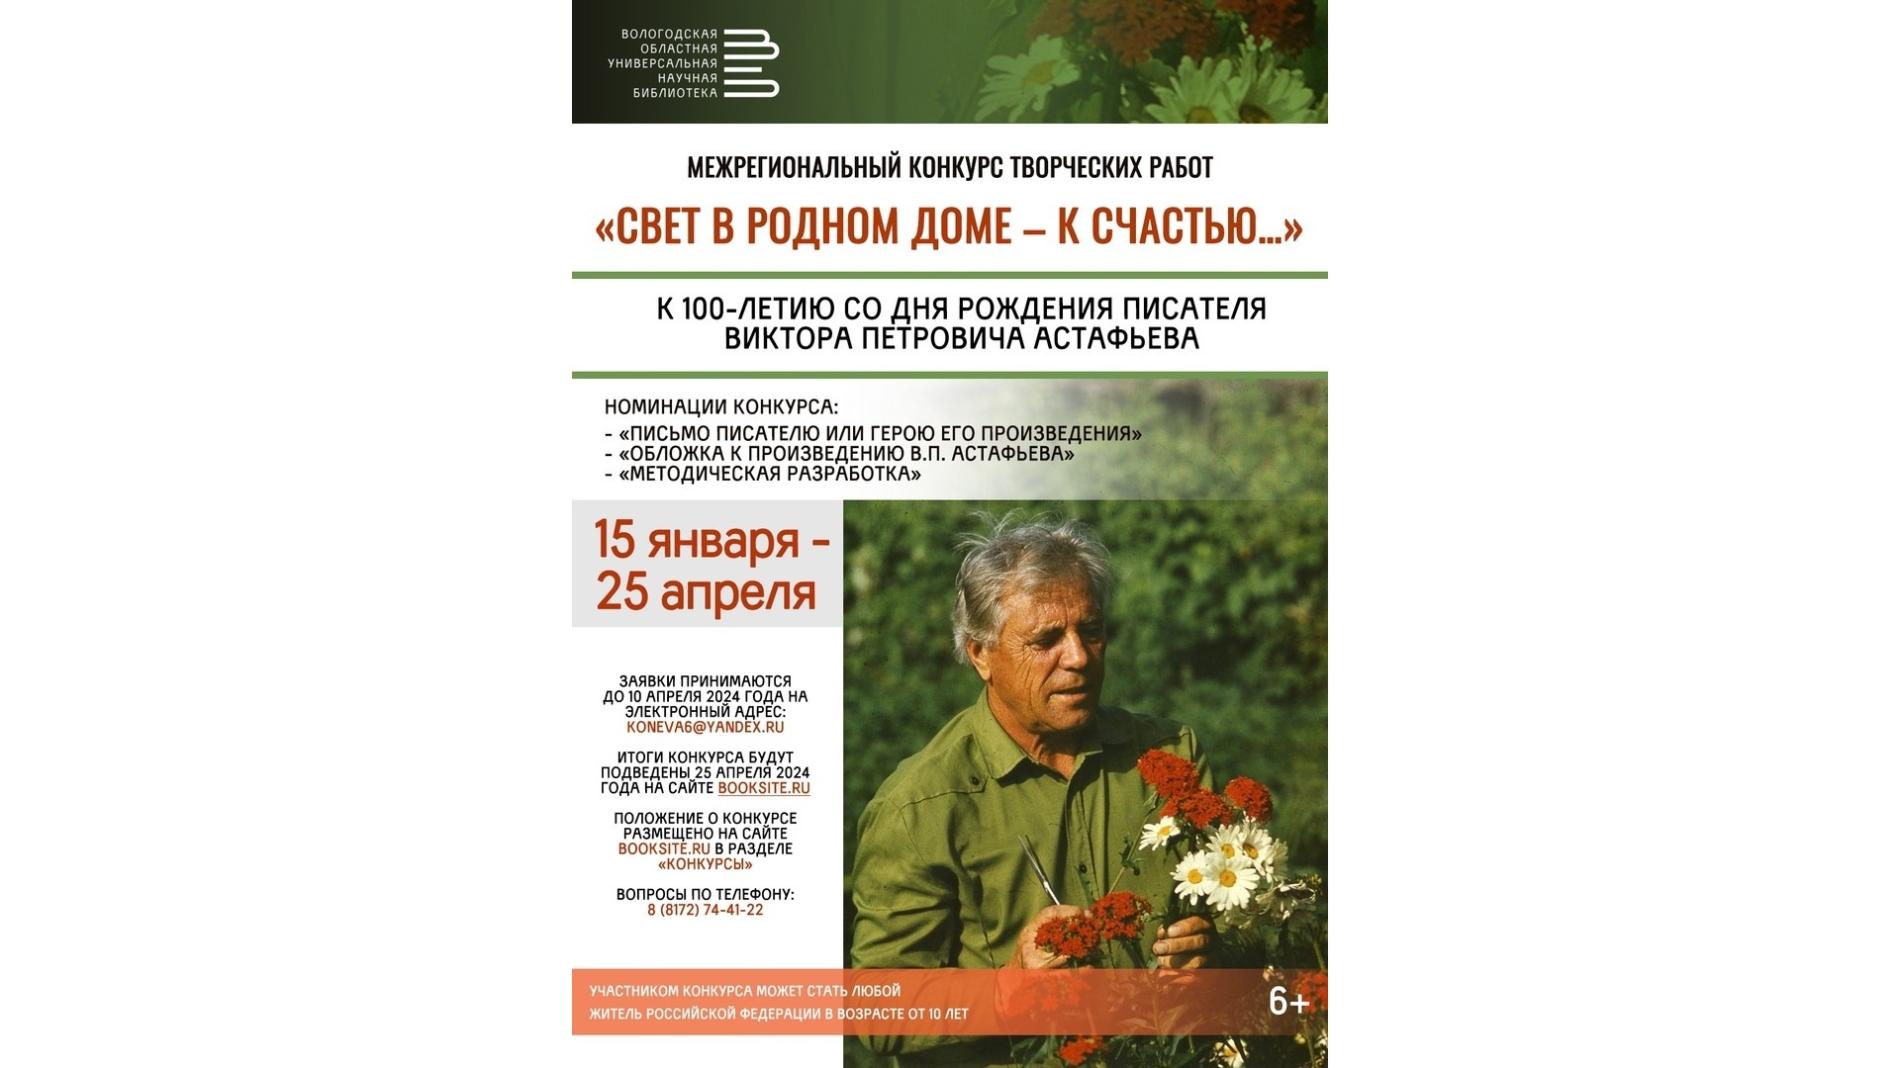 Конкурс творческих работ, посвящённых классику русской литературы, пройдёт в Вологде (6+)